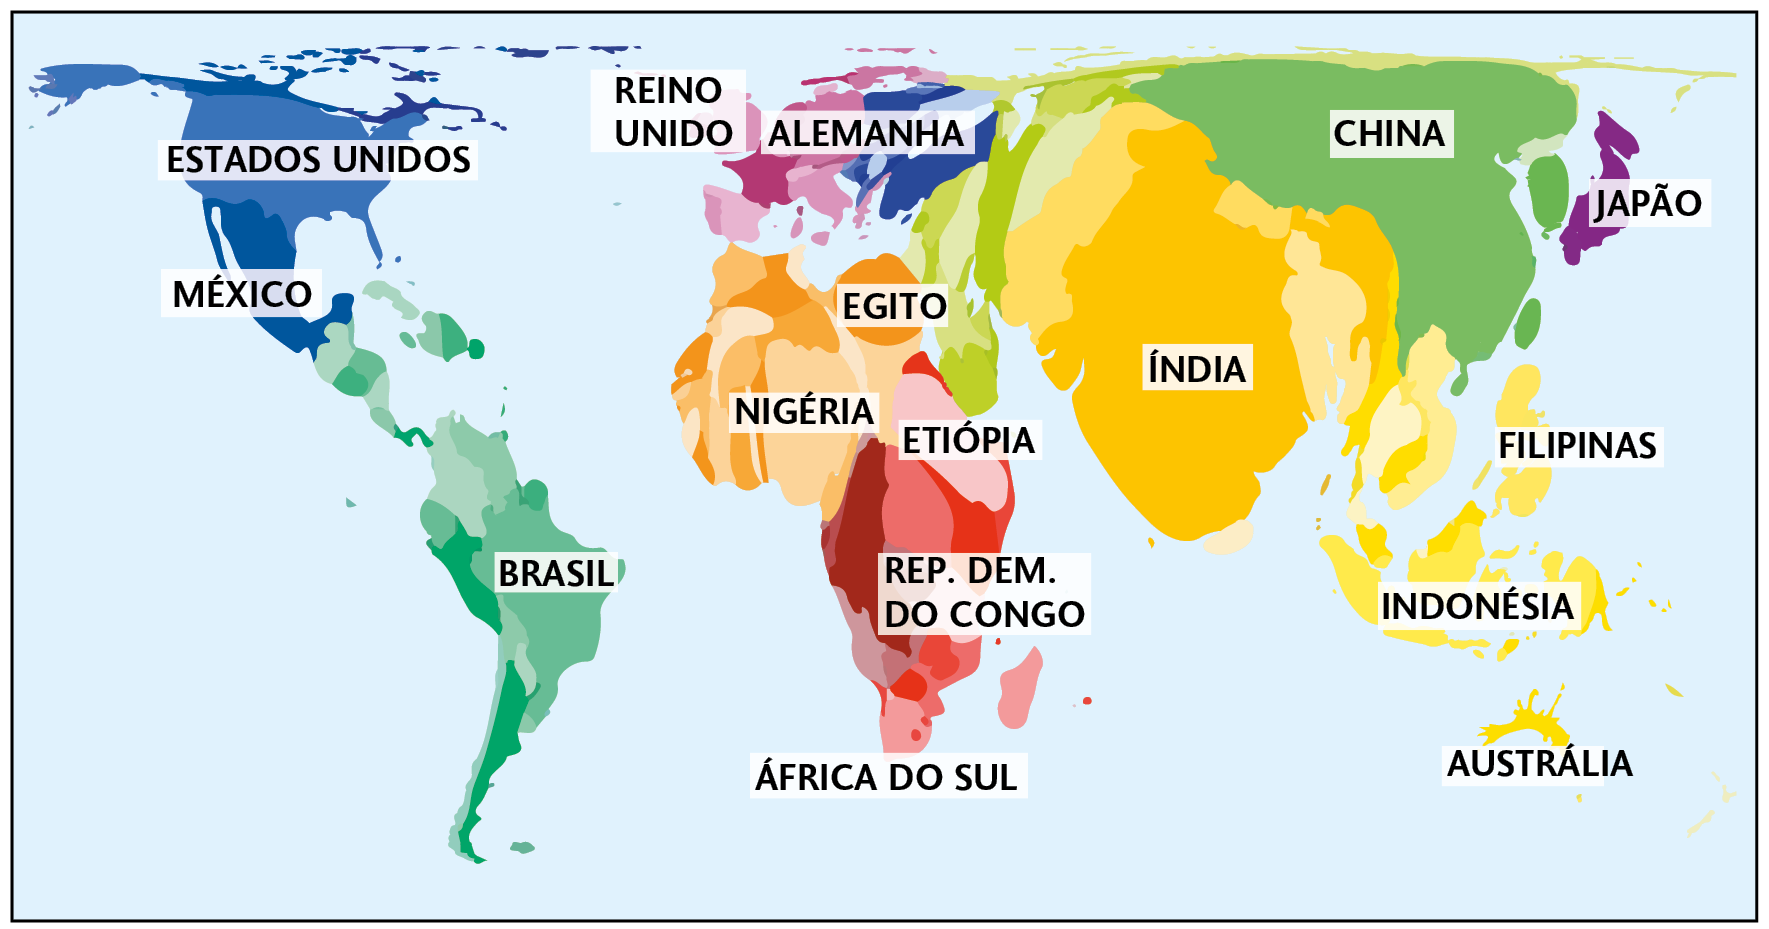 Mapa anamorfose. Distribuição da população mundial (2019). Mapa com os continentes e países em formatos distorcidos. Estados Unidos está menor, México está maior, Brasil está menor; Reino Unido e Alemanha estão maiores, Egito, Nigéria, Etiópia e República Democrática do Congo estão maiores, África do Sul está menor; Índia e China estão muito maiores; Japão, Filipinas e Indonésia estão maiores e Austrália está bem menor.